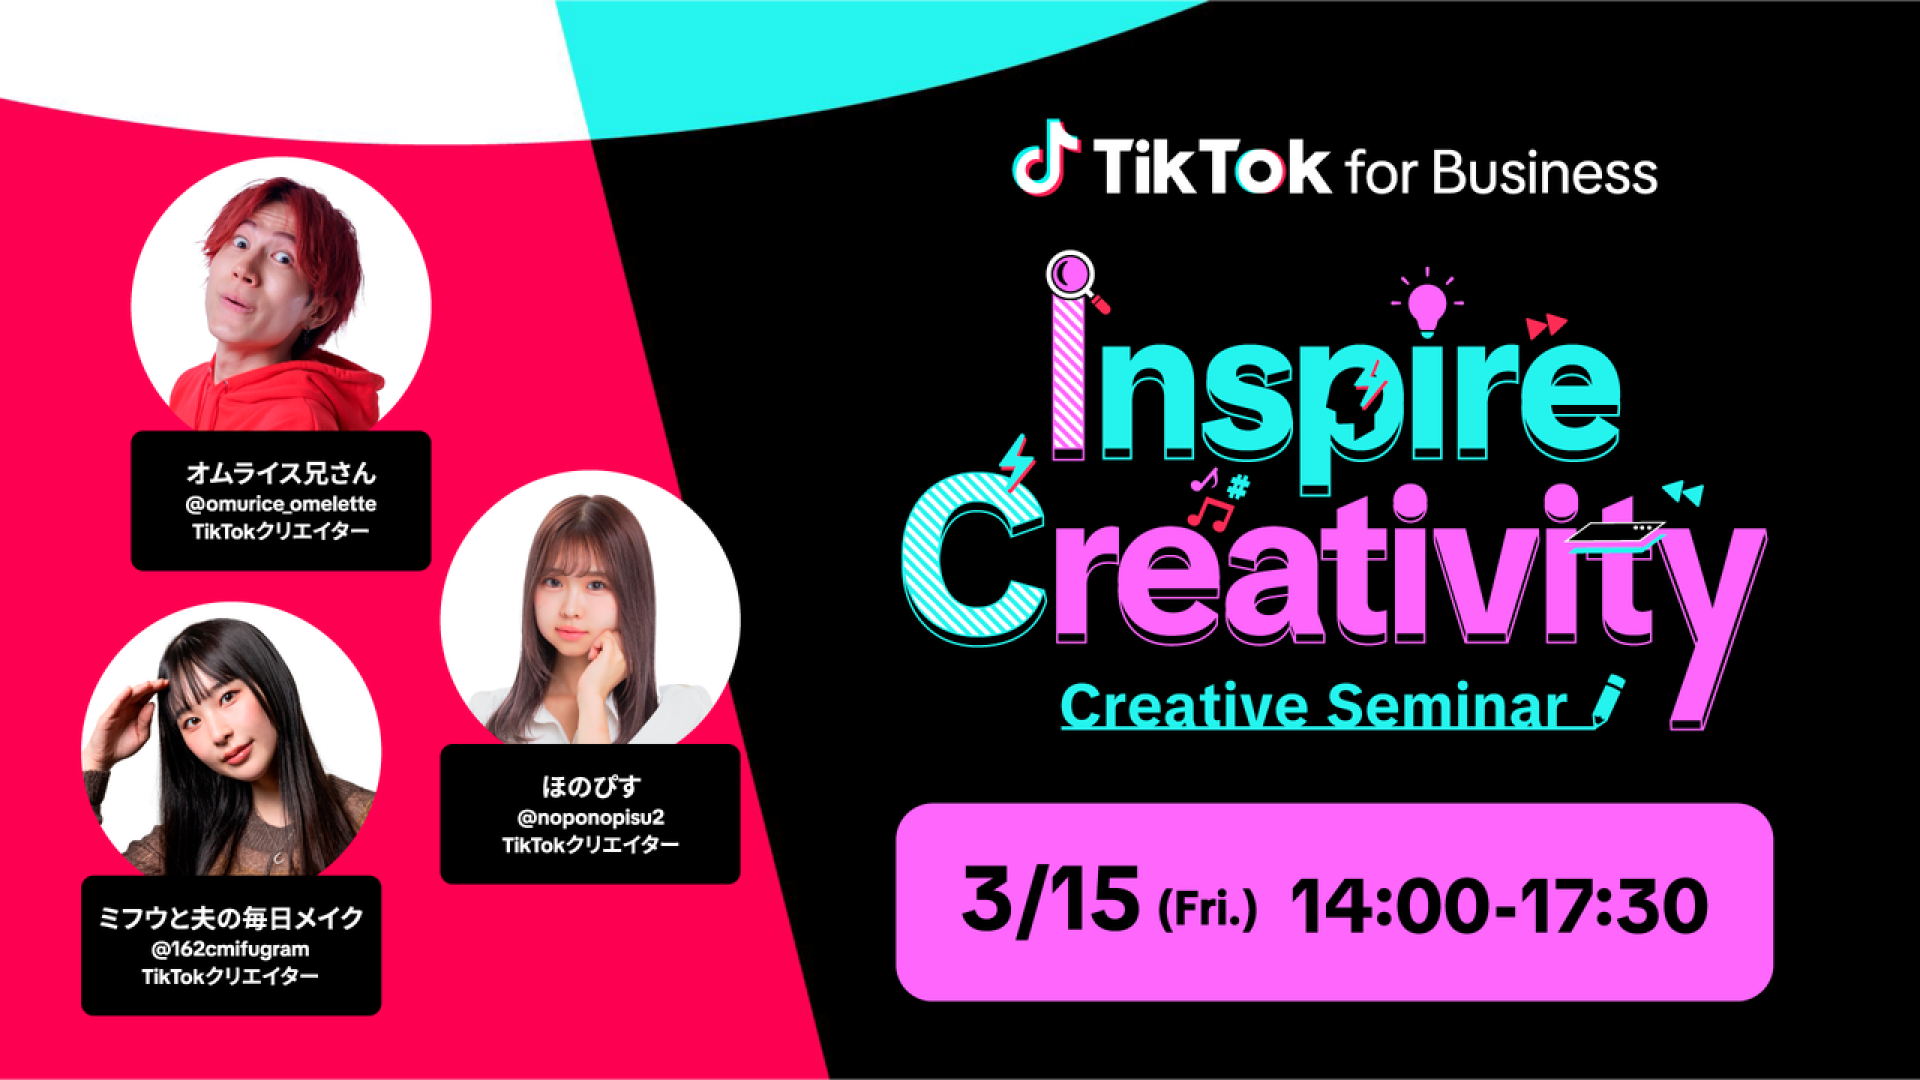 3月15日（金）開催の「Inspire Creativity -TikTok for Business クリエイティブセミナー-」に人気クリエイターのほのぴすが登場！